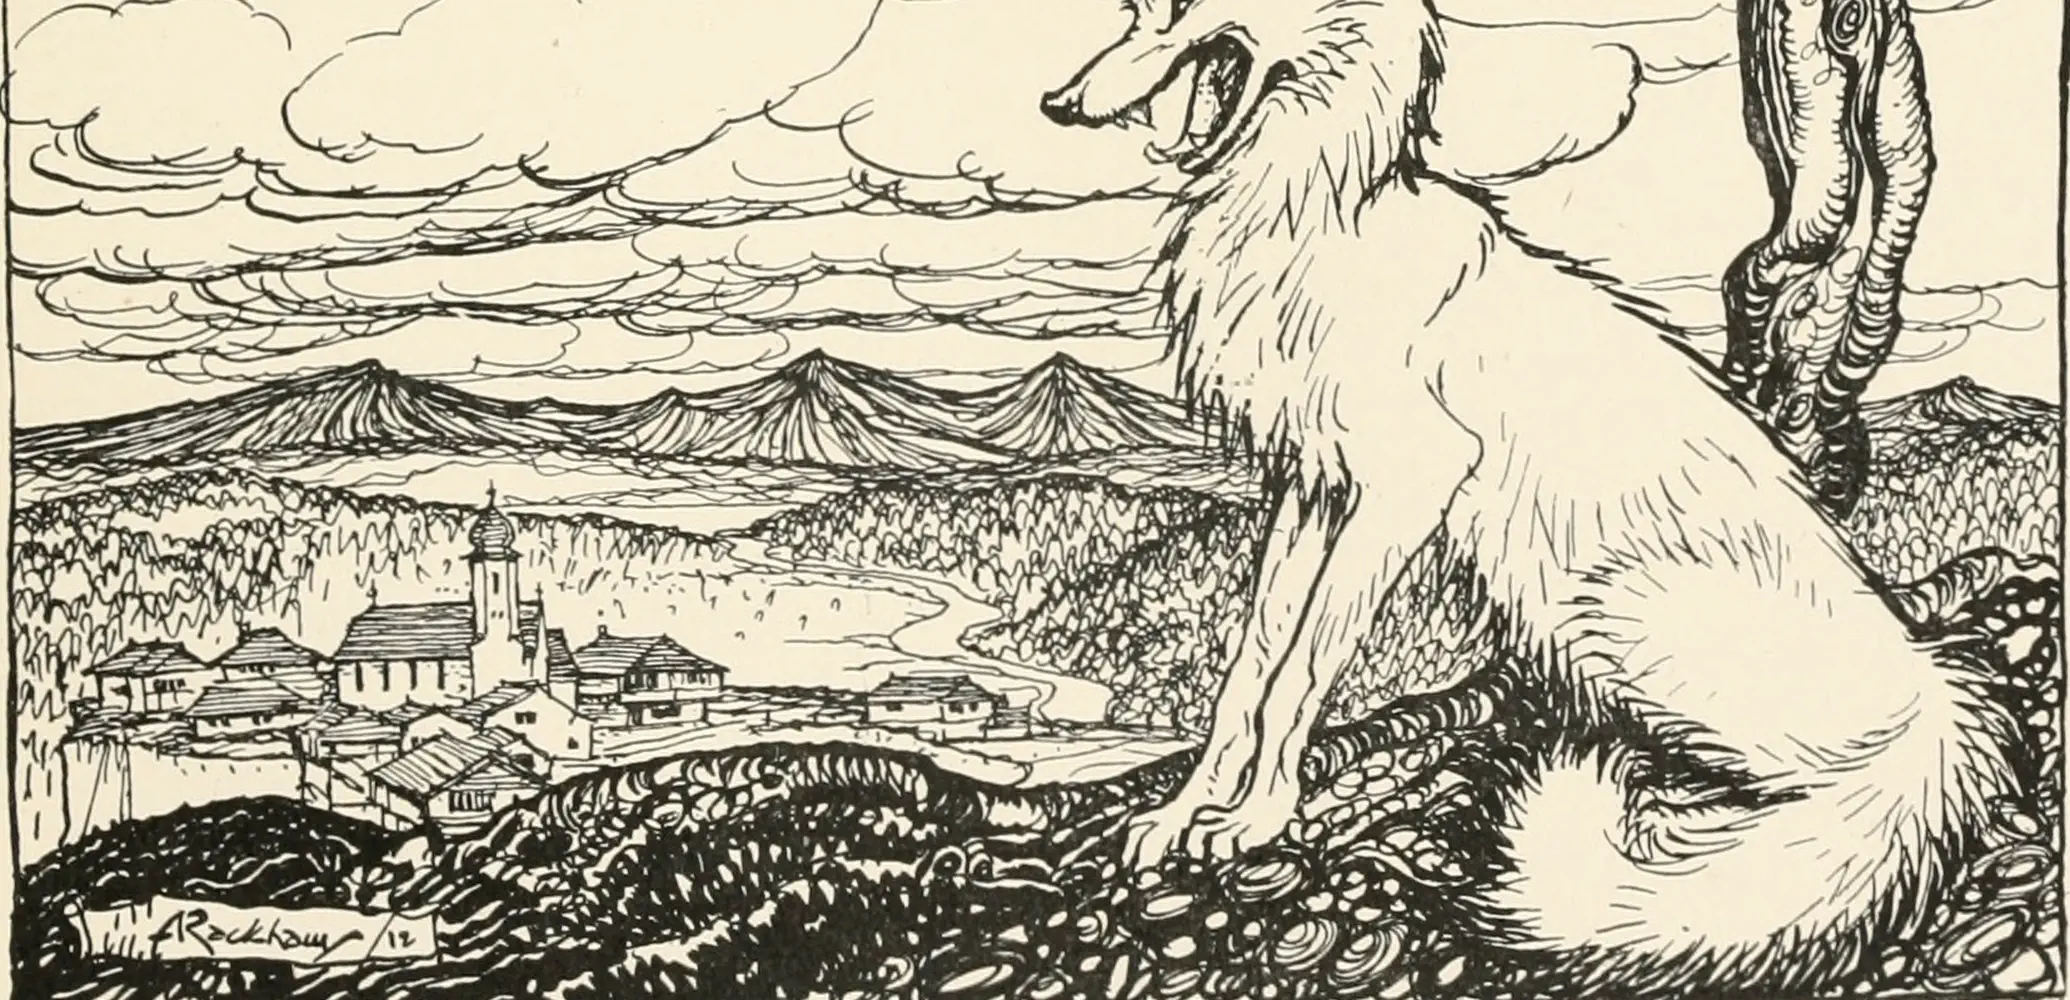 De honden, de vossen, en de mensen in de toren